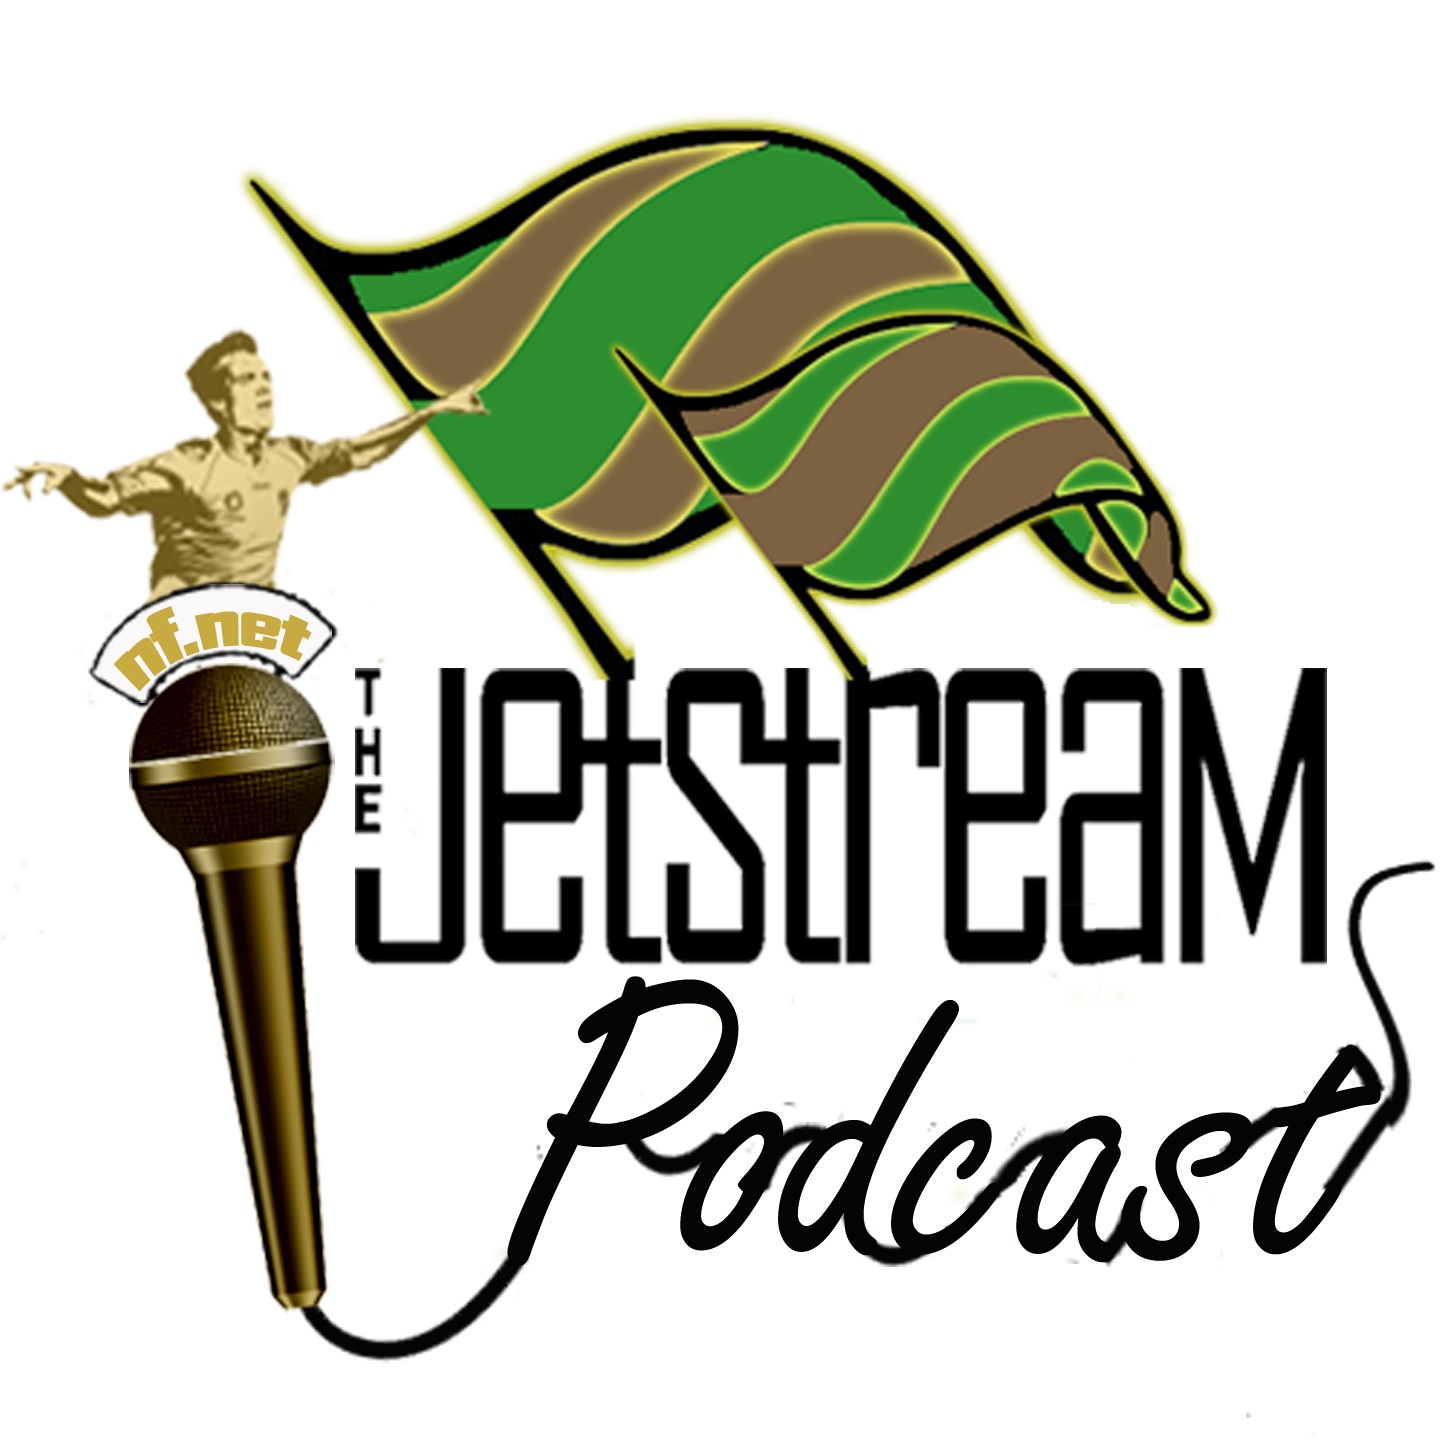 The Jetstream Podcast S18Ep11 - Vortex Of Weird